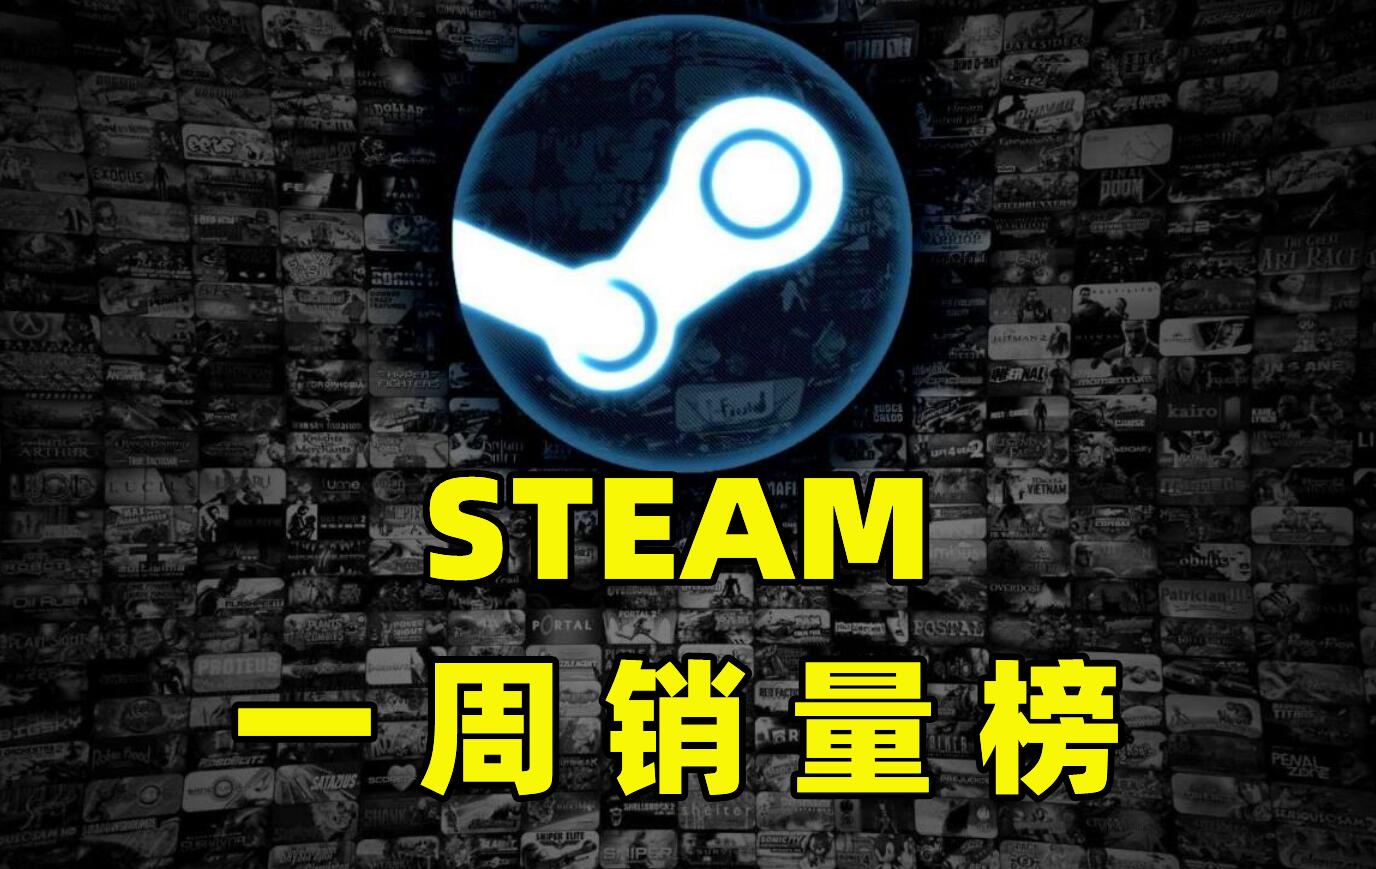 Steam一周销量:2022神仙打架!索尼开局放大招,2天时间空降登顶